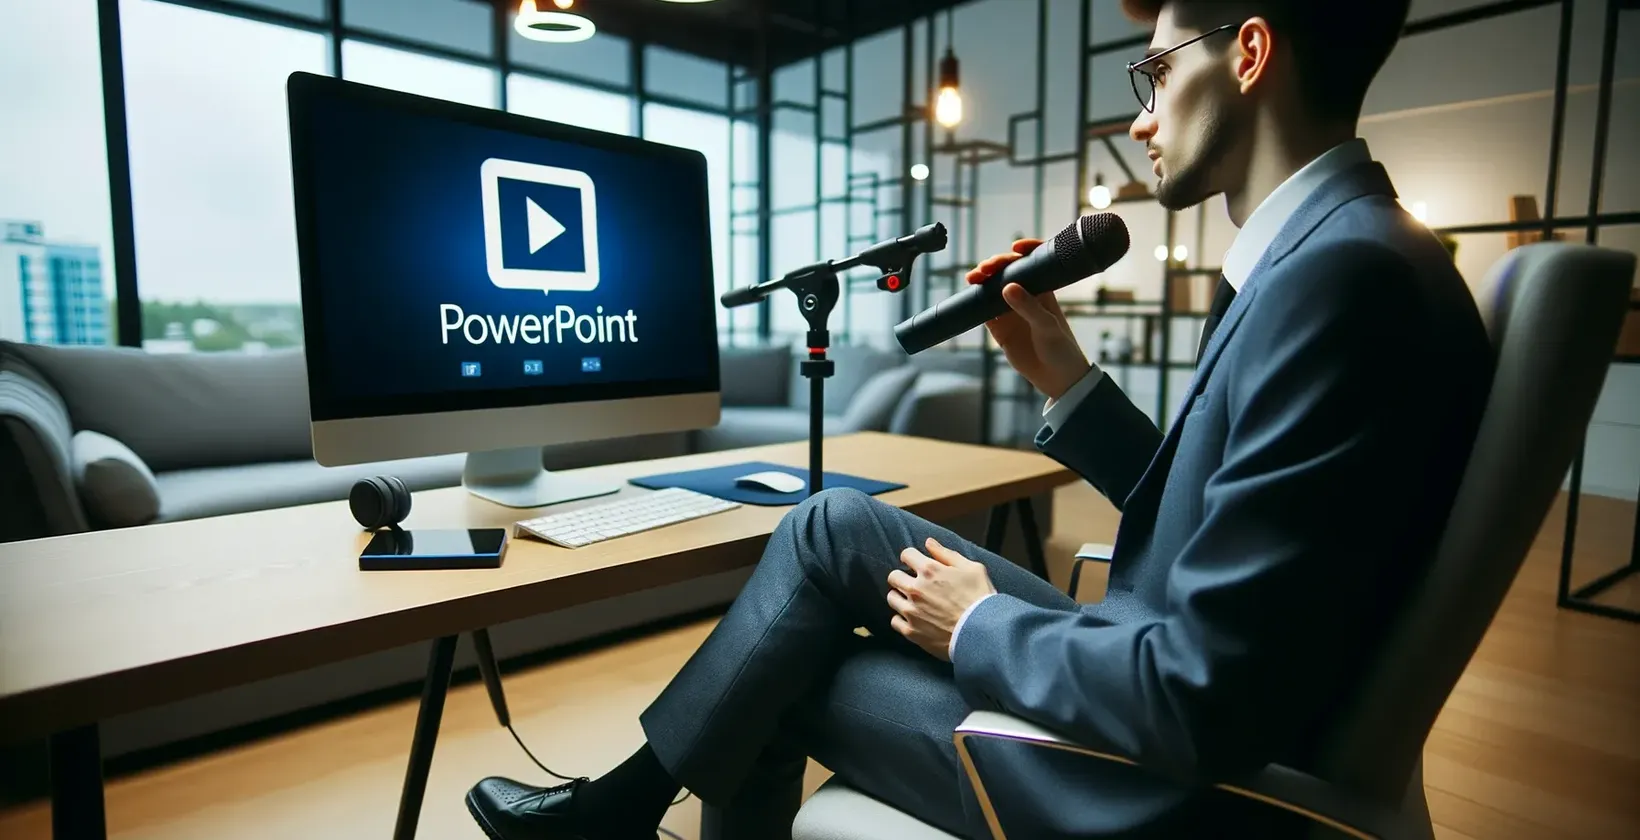 Vīrietis birojā ar mikrofonu skatās uz monitoru, kurā redzams PowerPoint logo.